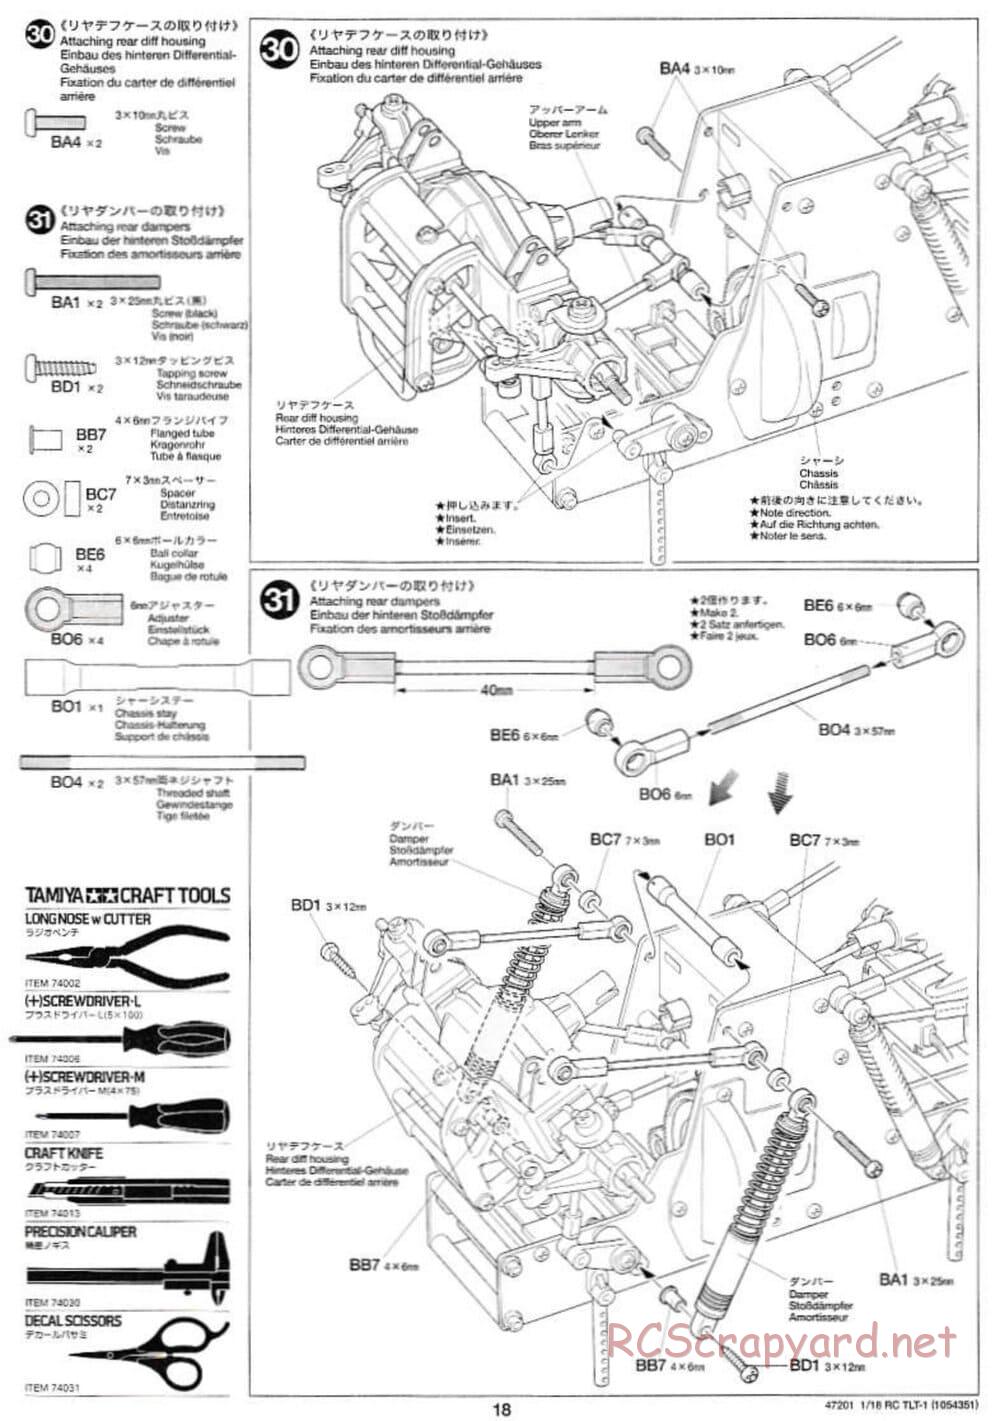 Tamiya - Rock Buster - TLT-1 Chassis - Manual - Page 18